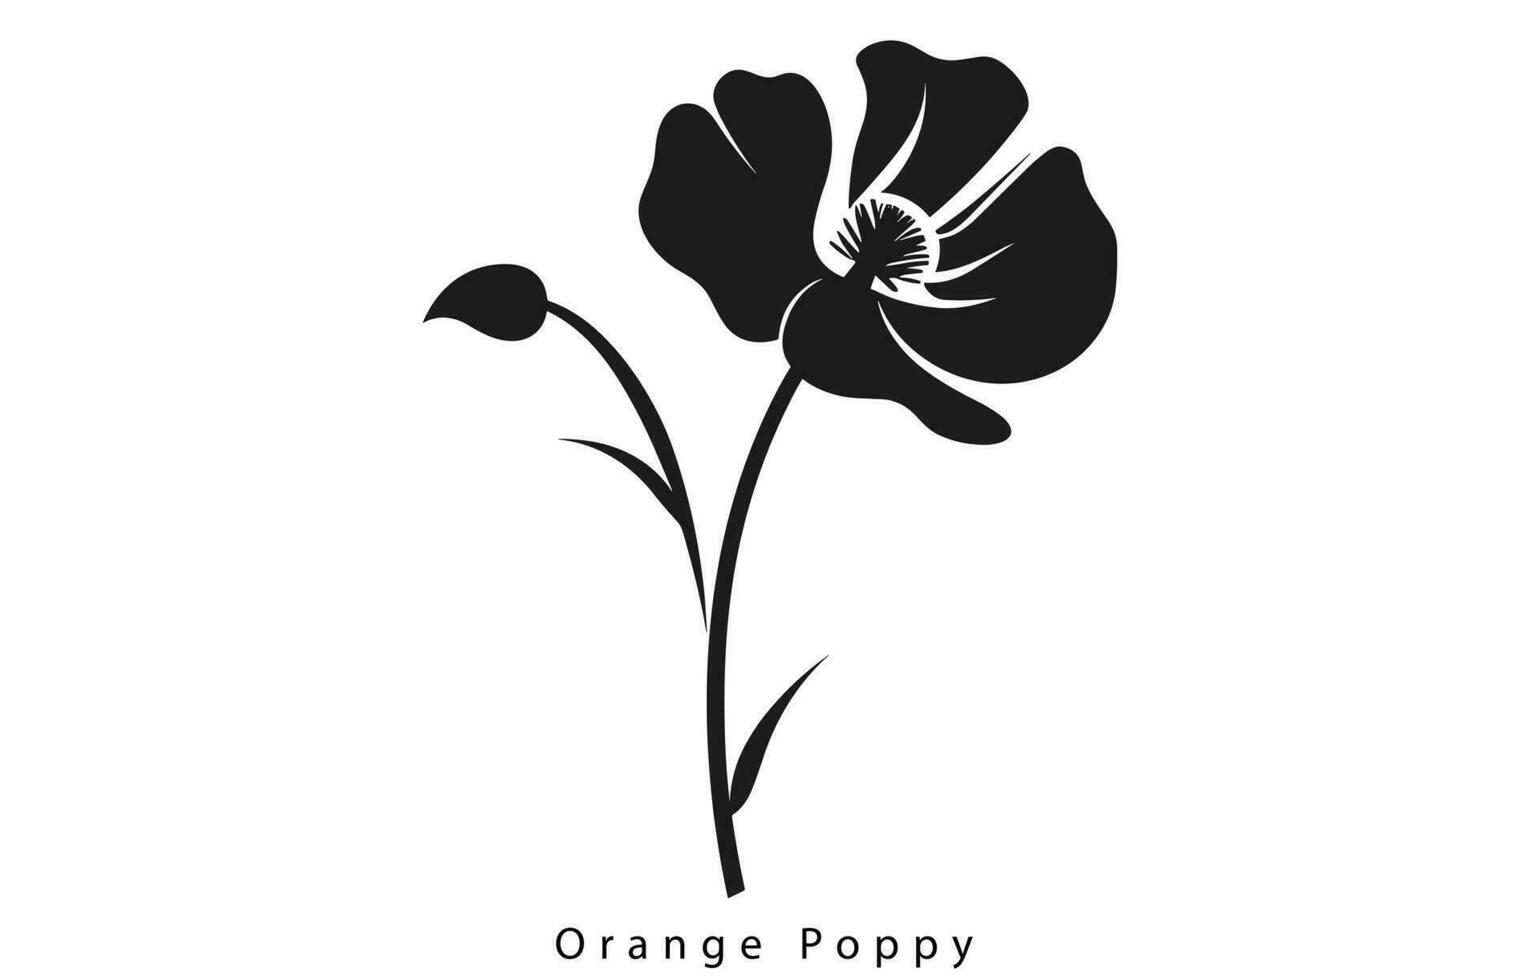 California Poppy, California Poppy Vector, Poppy Flower, Poppies Vector, Pretty Flower Vector, vector